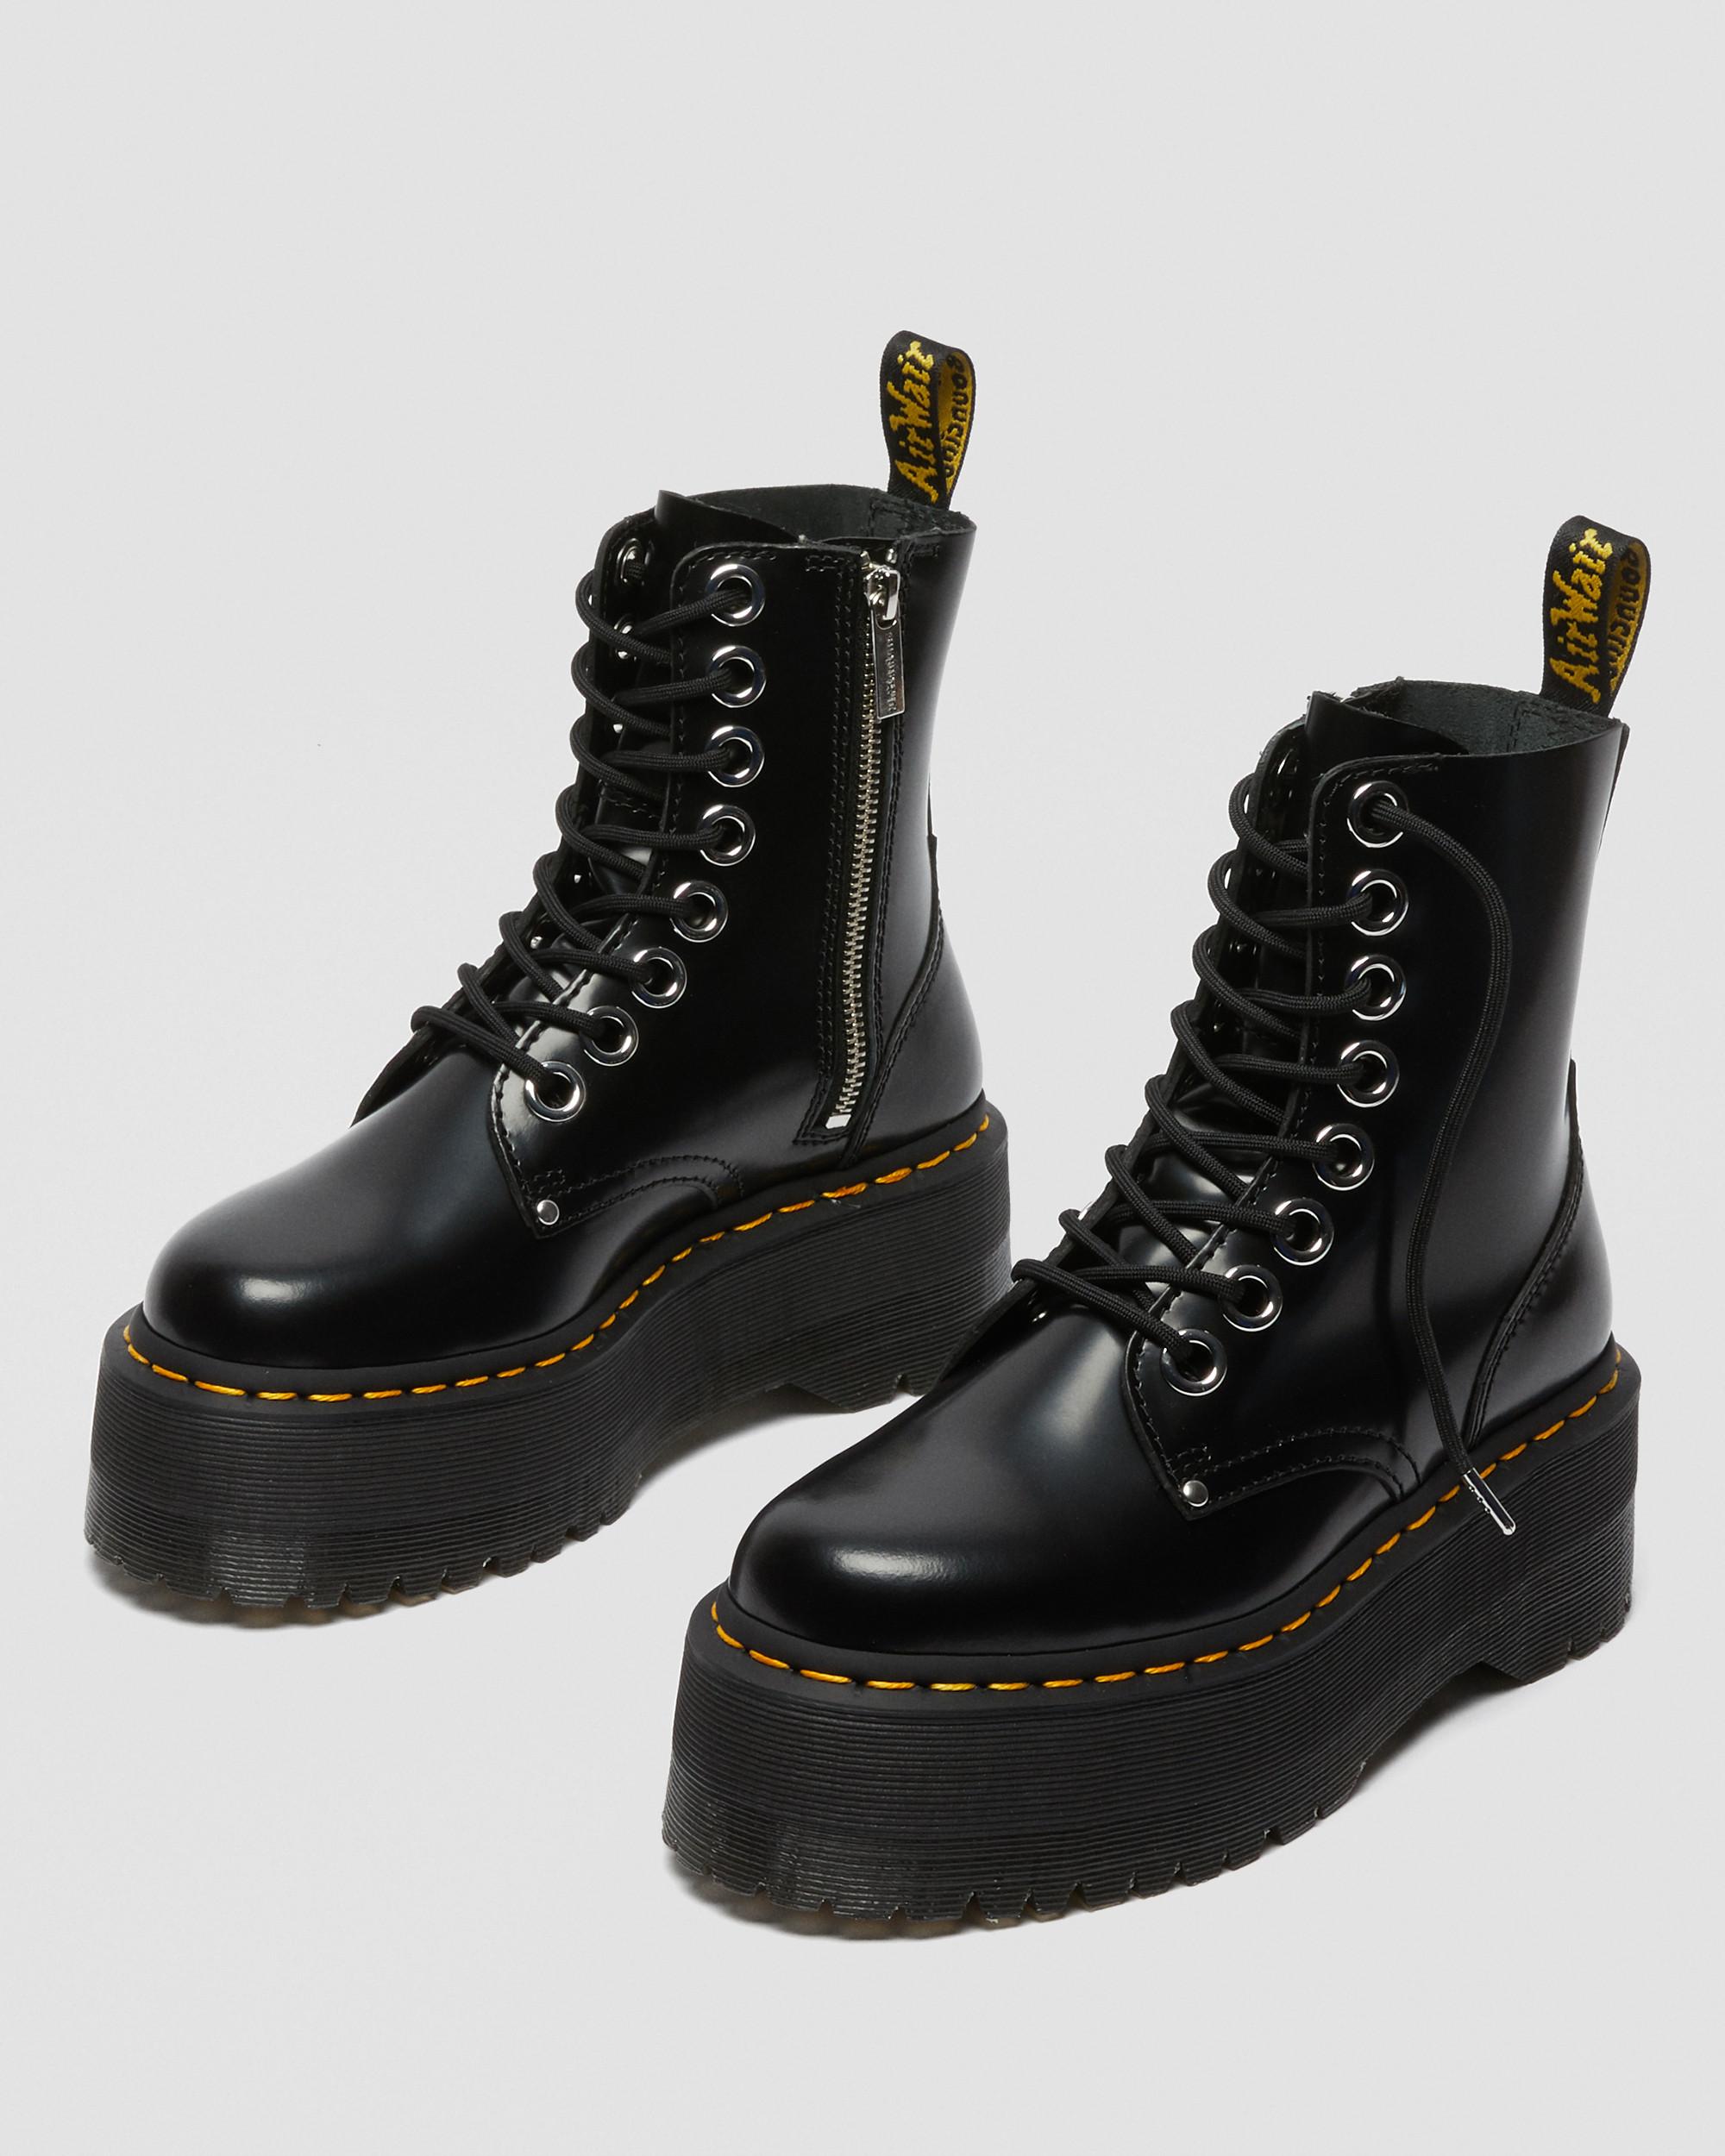 Jadon Max Boot Women's Platforms in Black